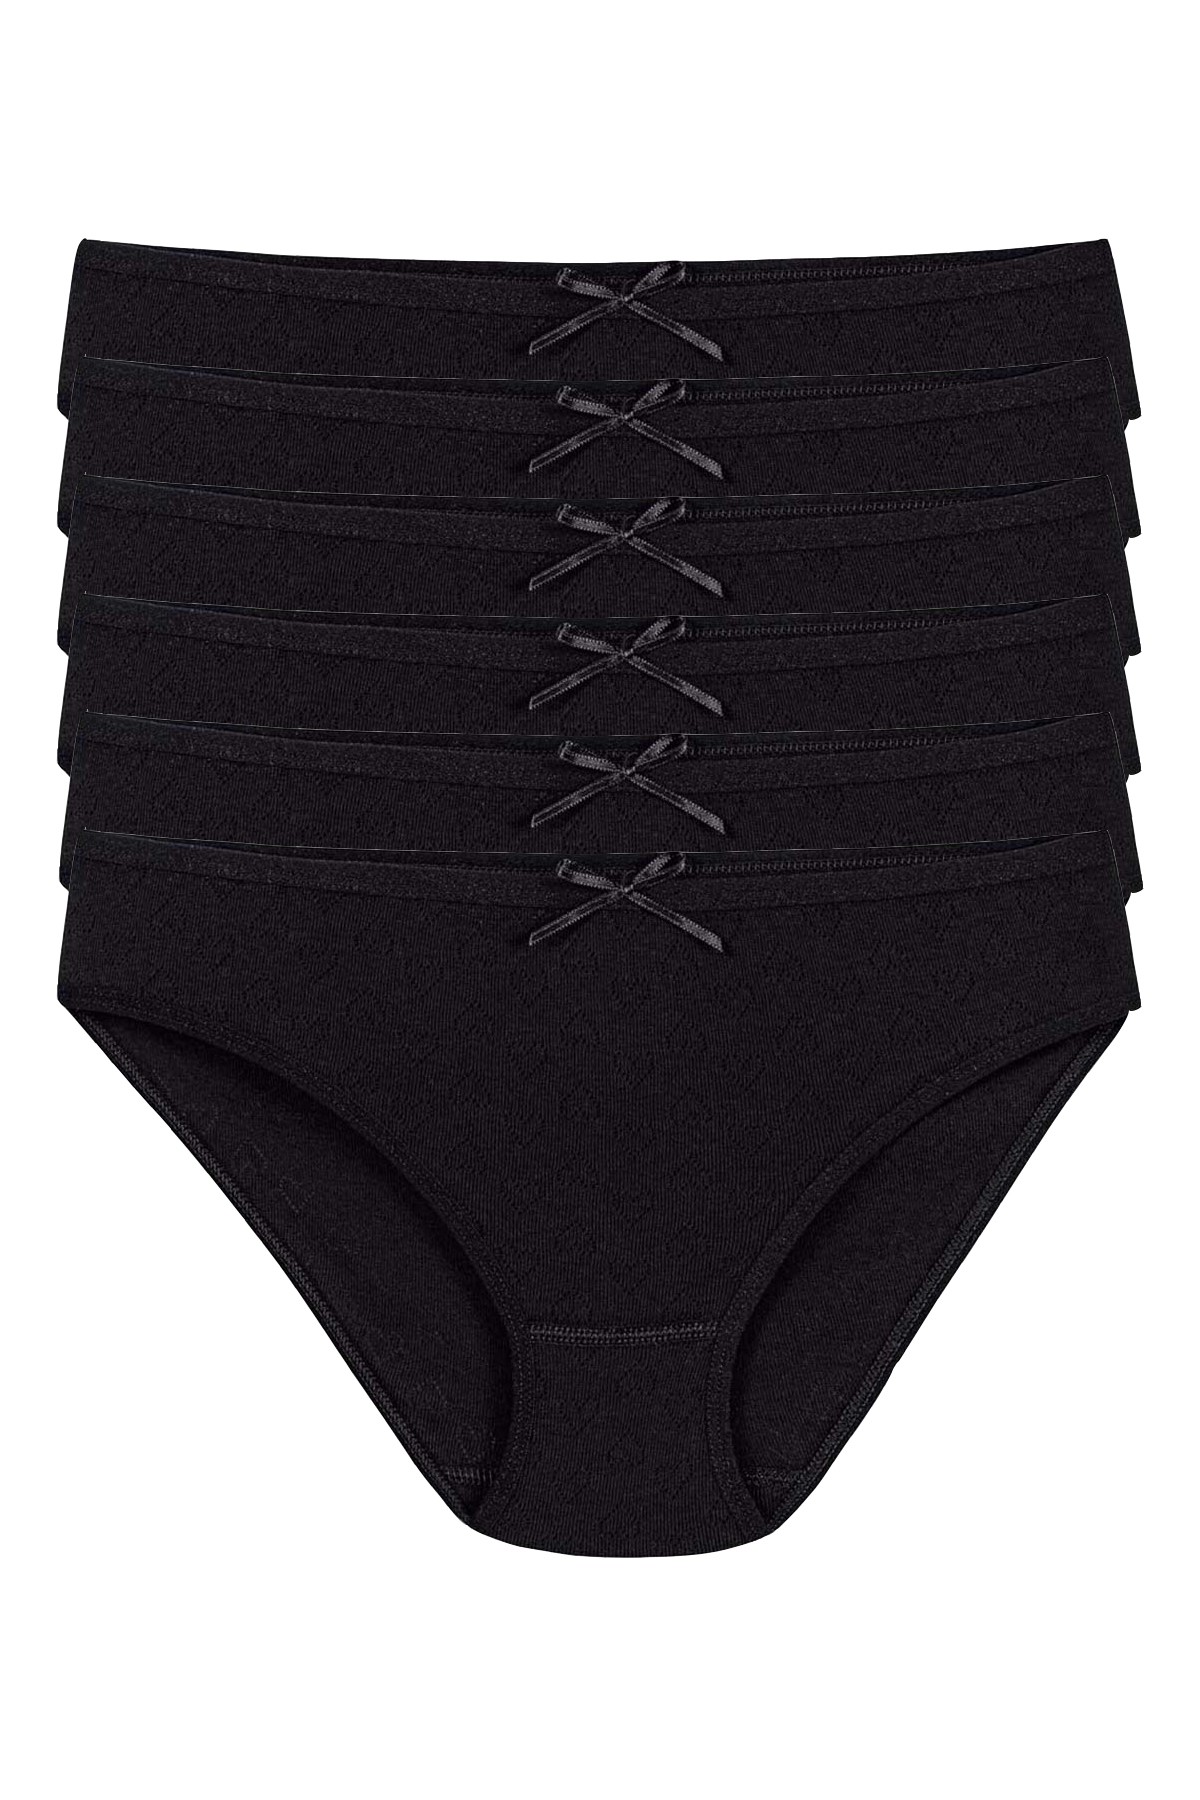 Kadın Siyah 6'lı Paket %100 Pamuk Kalpli Bikini Külot